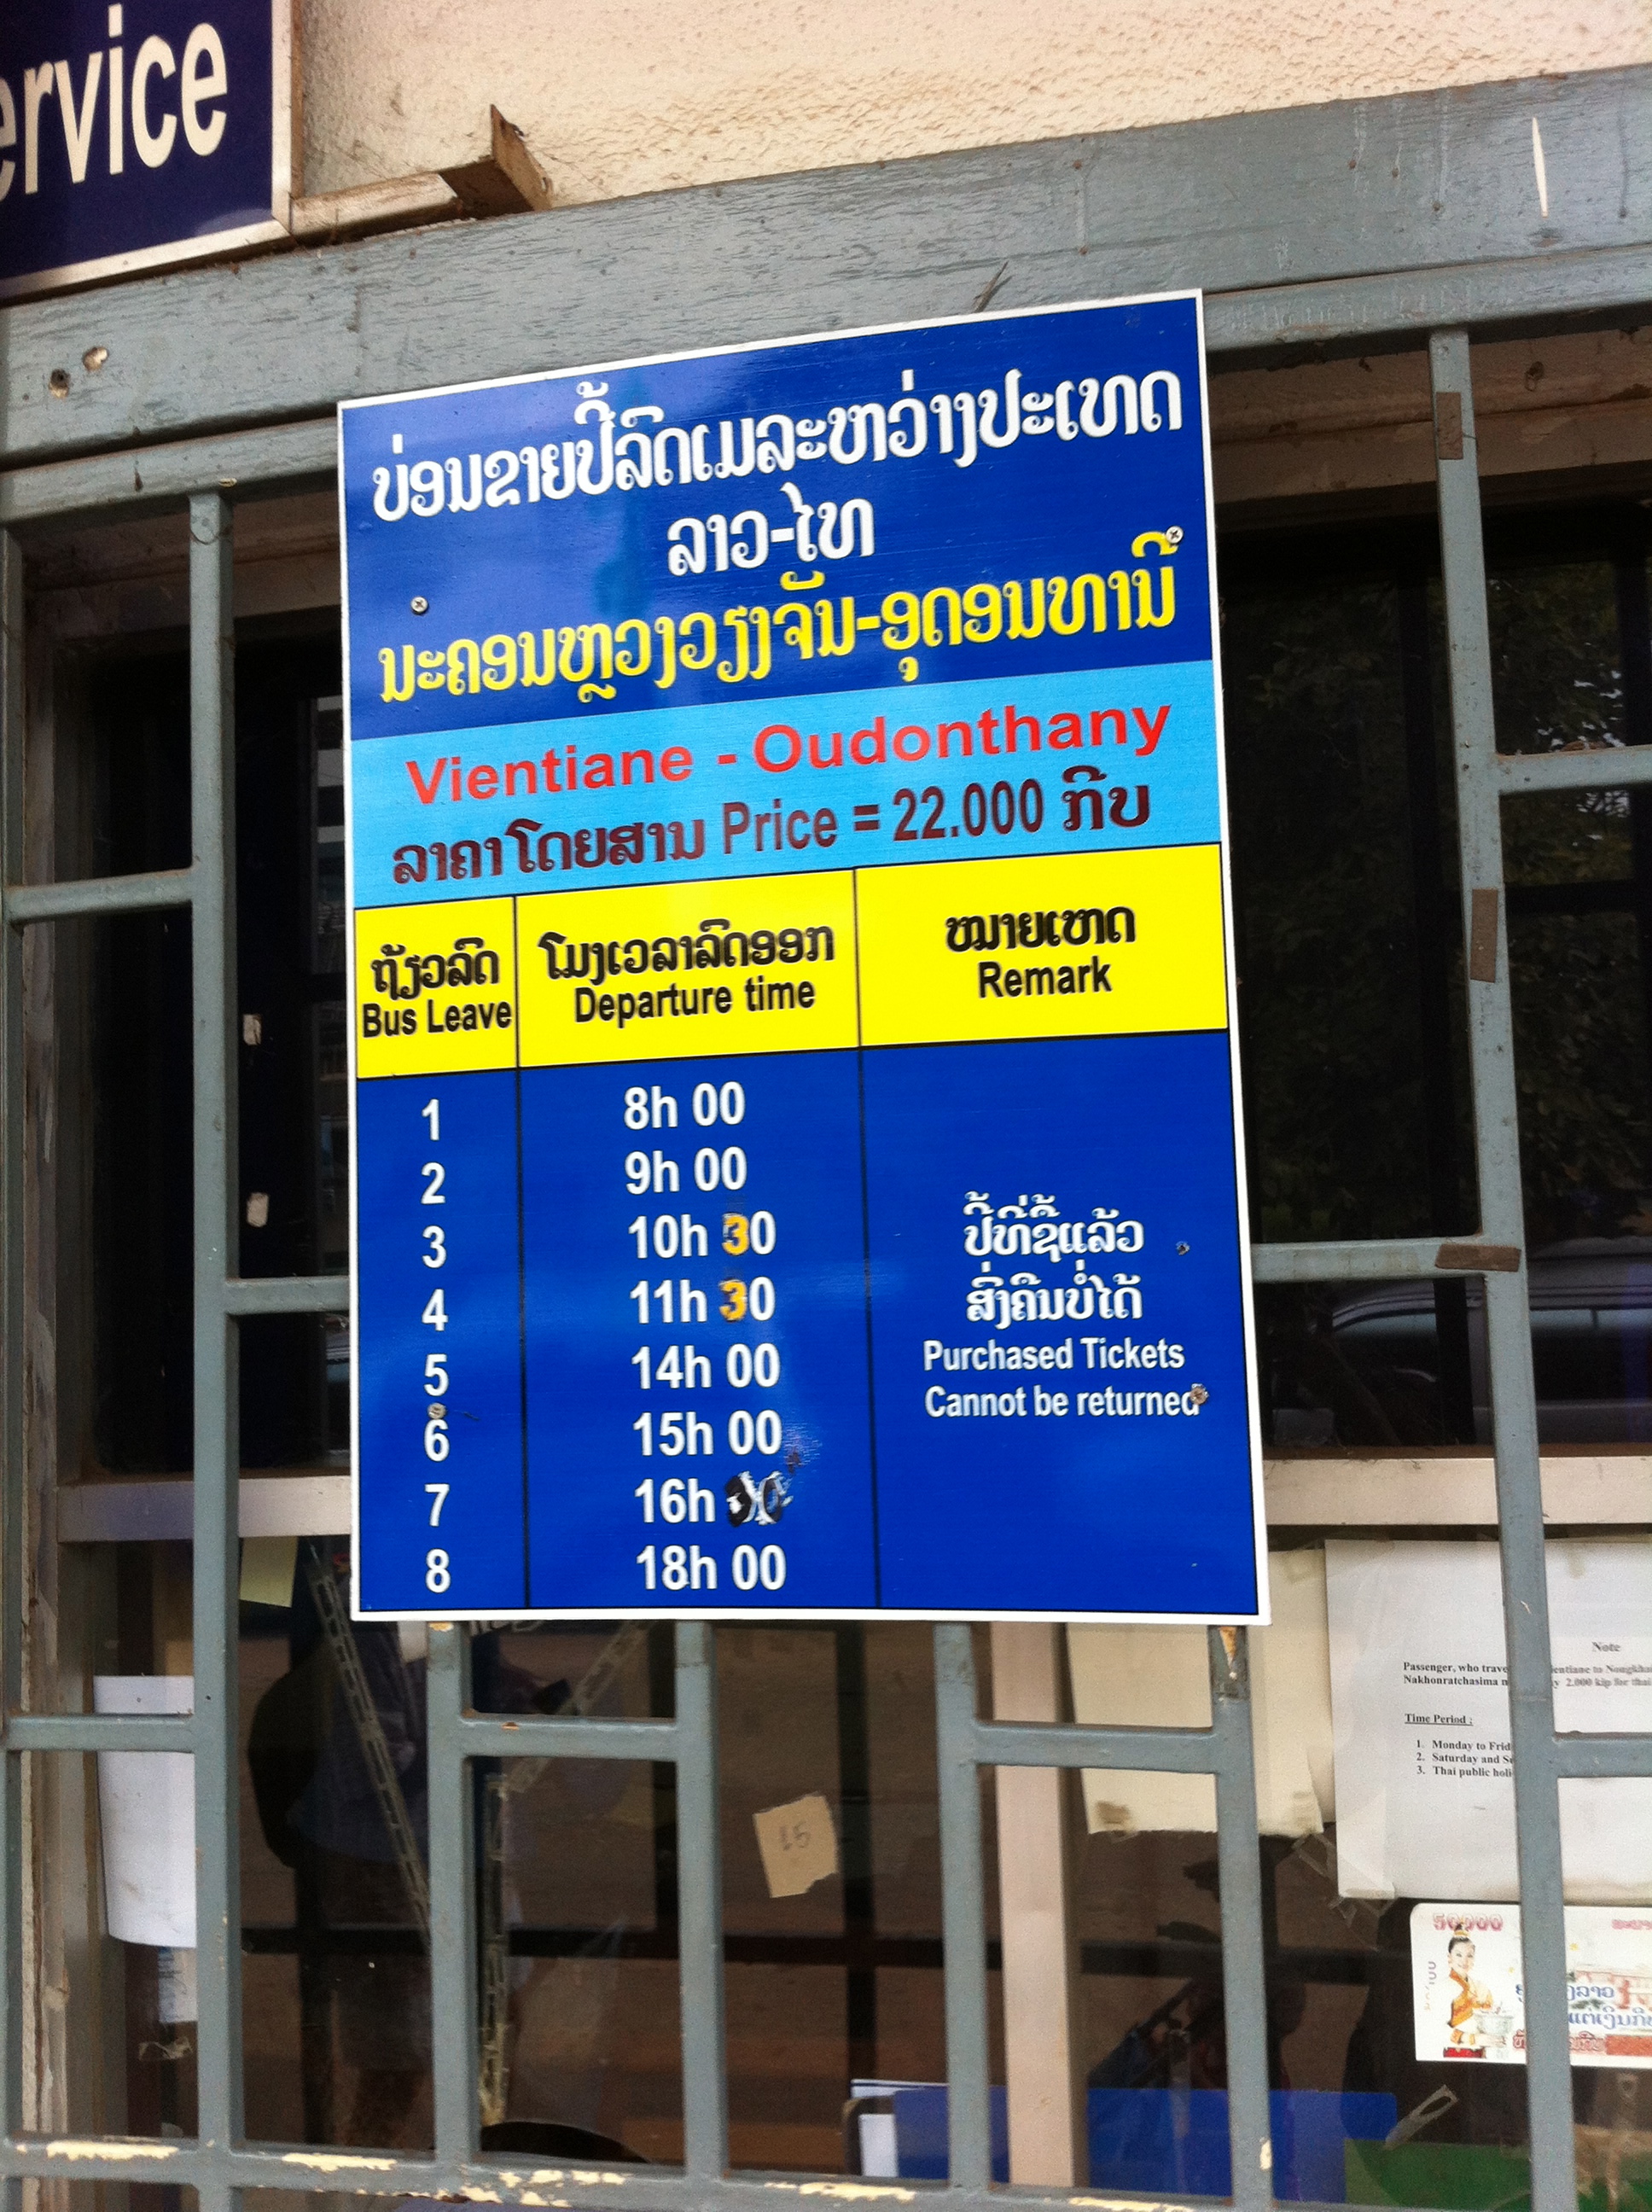 Расписание автобусов Вьентьян - Удотани